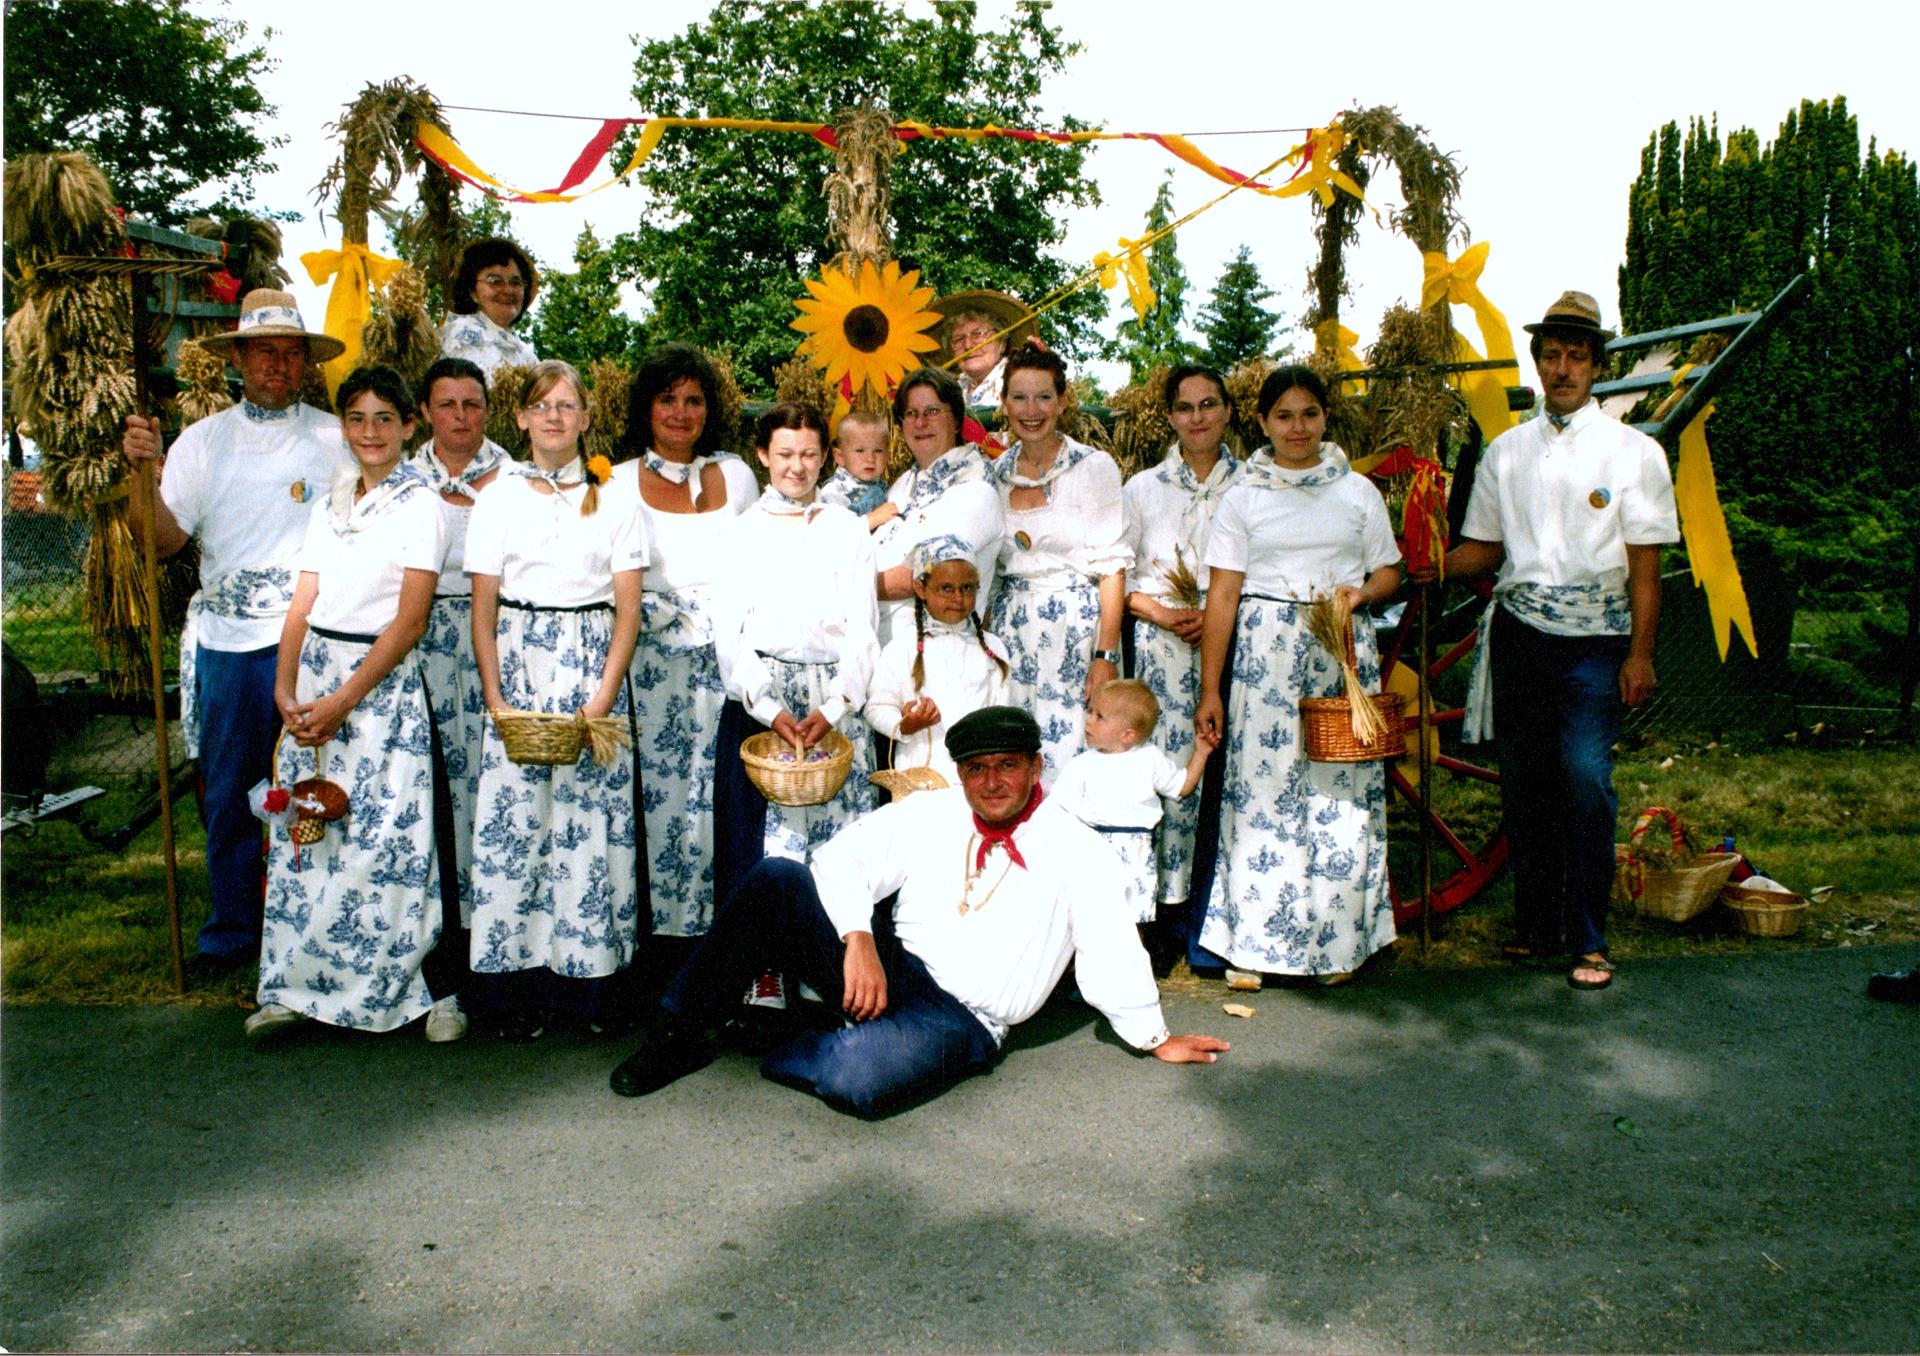 Mitglieder des Lüdersdorfer Heimatverein e.V. mit ihren Trachten zum Gruppenfoto aus Anlass des Kreiserntefestes 2004 in Lüdersdorf